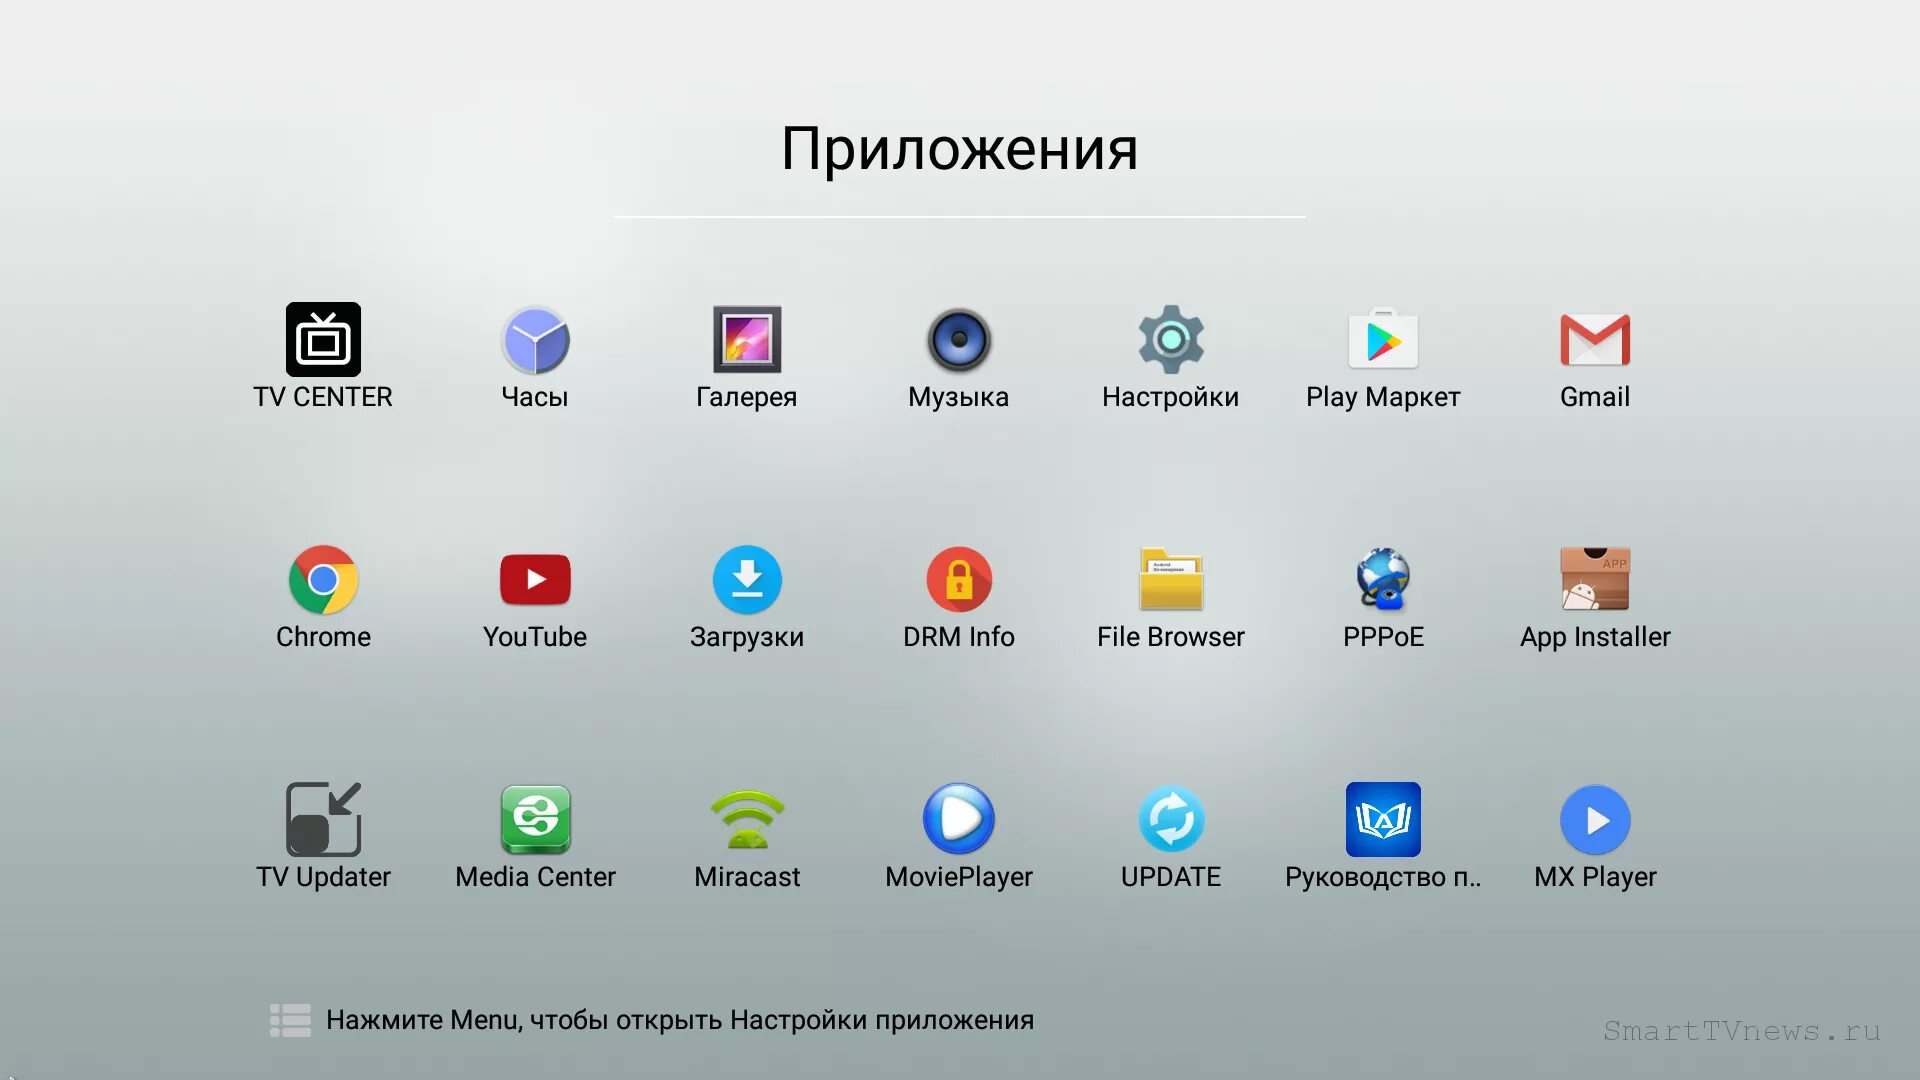 Приложения для TV приставок. Программы для андроид приставки. Android TV приложения. Андроид ТВ приставка Интерфейс. Android tv приложения бесплатные